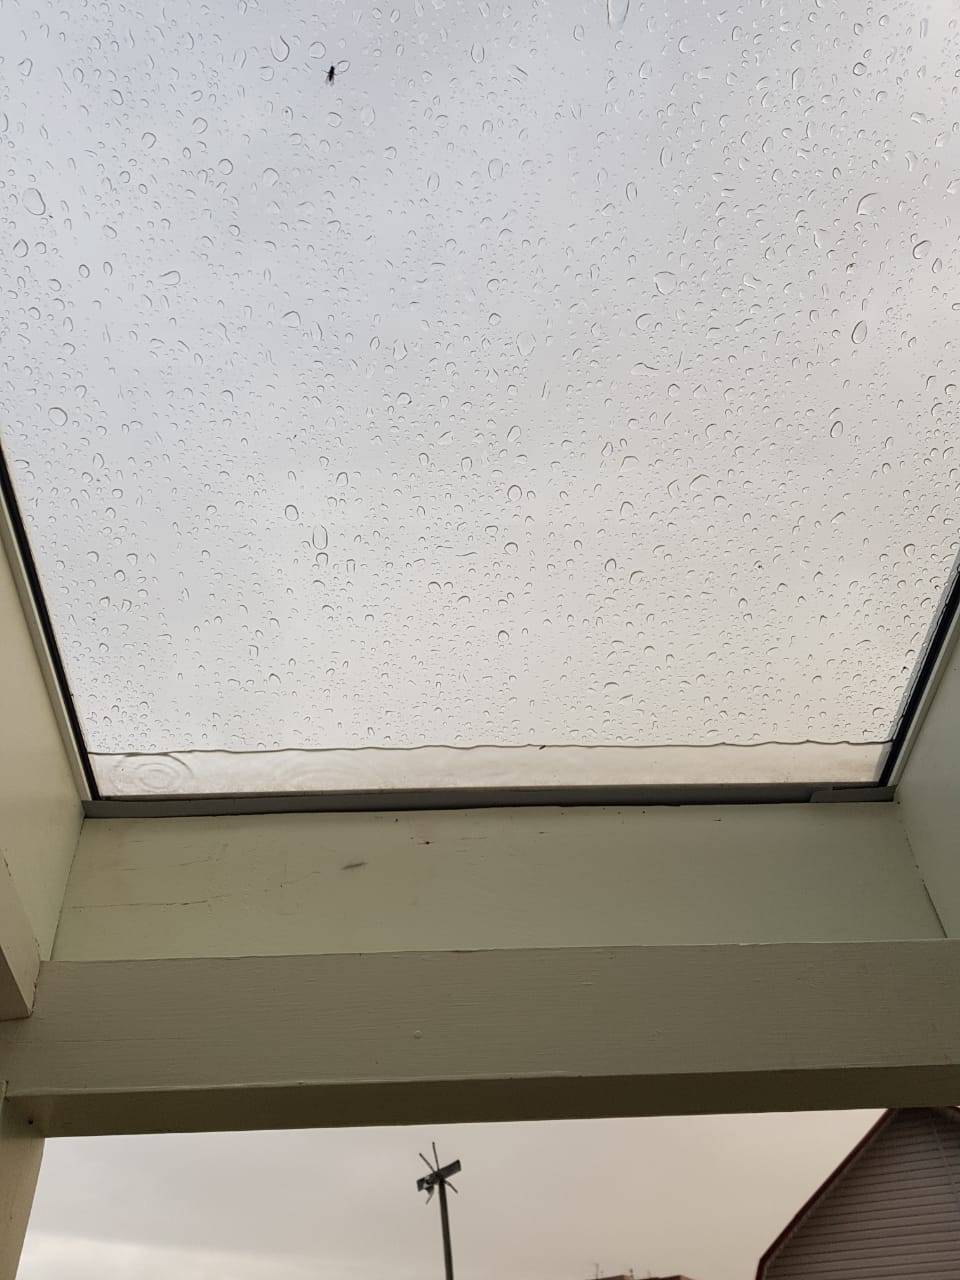 Капли дождя на прозрачной крыши